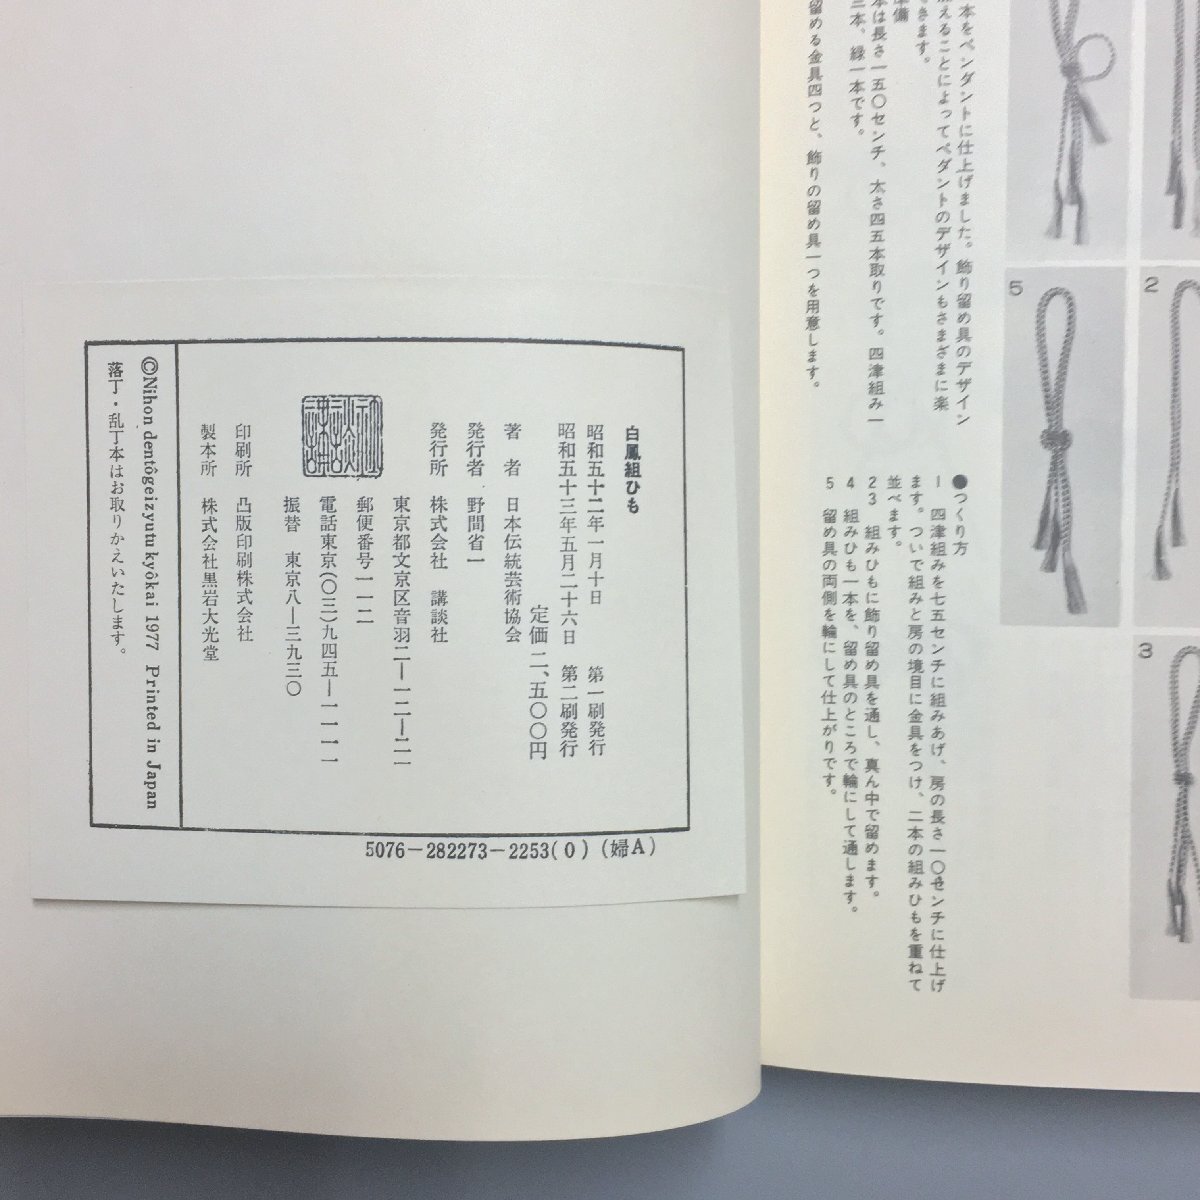 『白鳳 組ひも 組み方のすべて 古典から現代まで』 日本伝統芸術協会  参考 資料 技法 くみひも 組紐の画像5